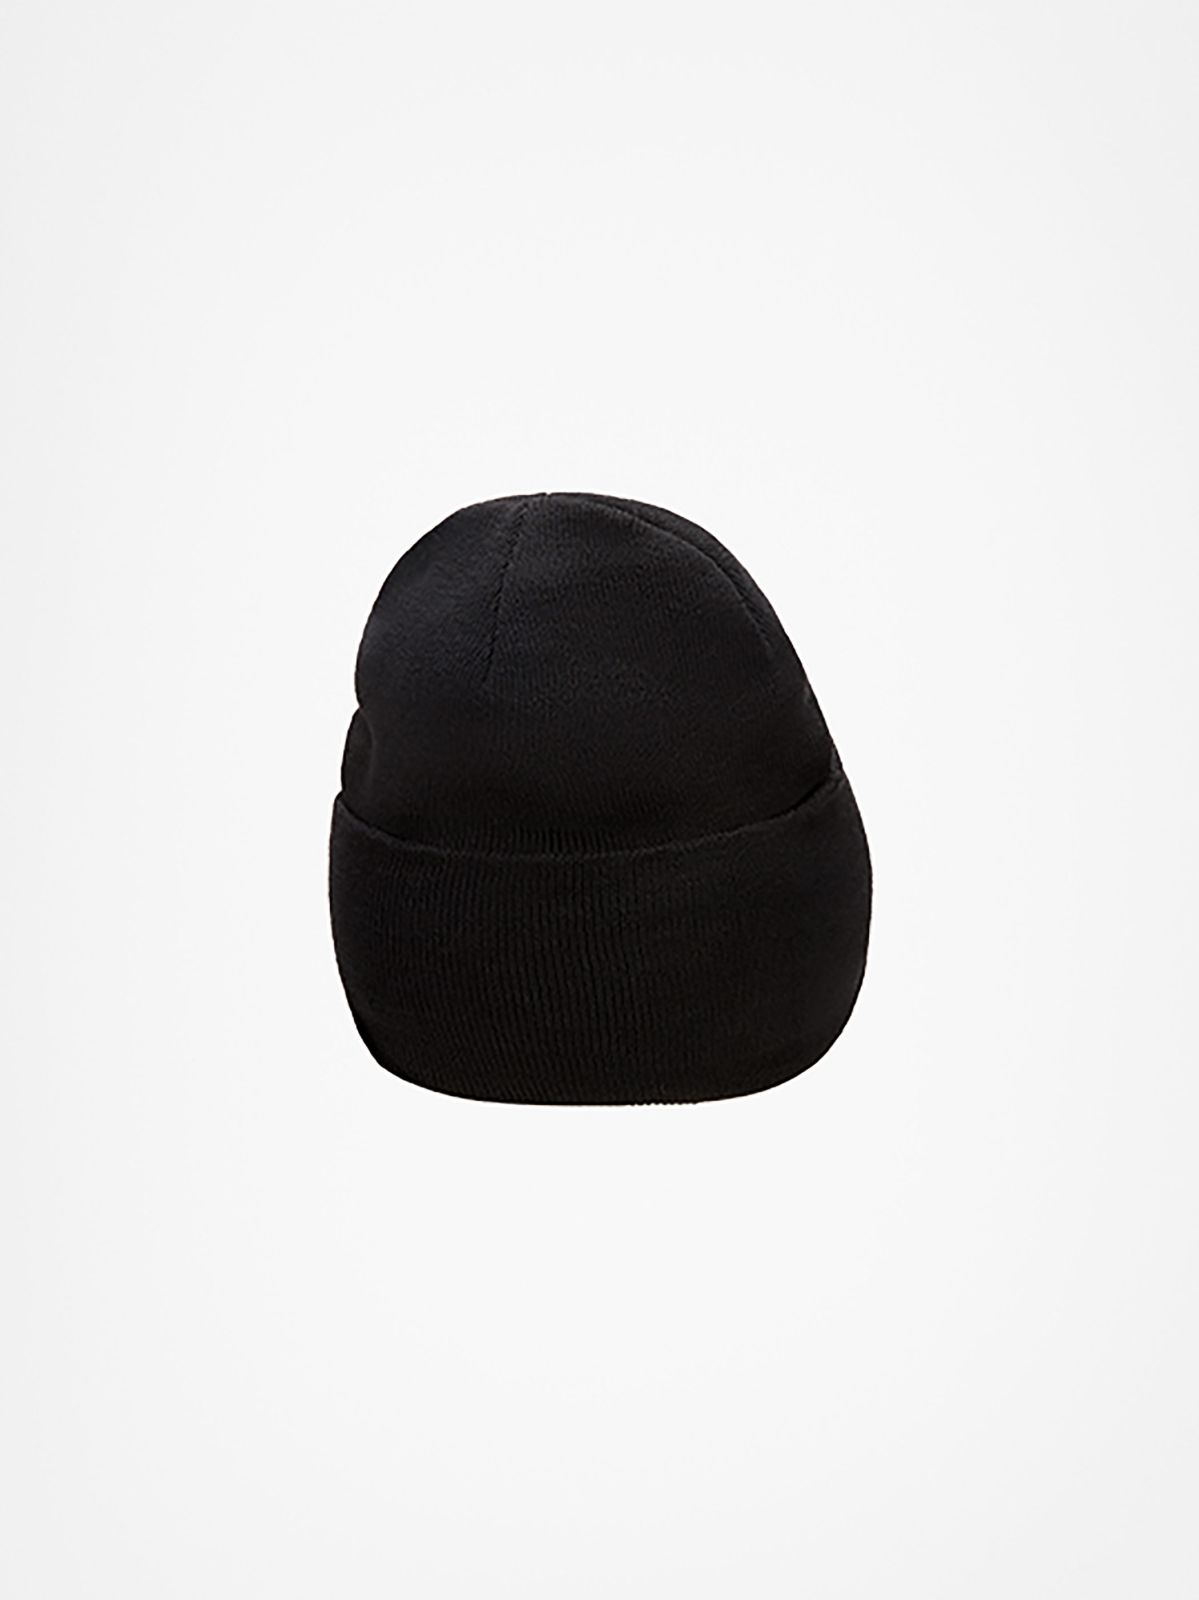  כובע גרב לוגו / גברים של CONVERSE